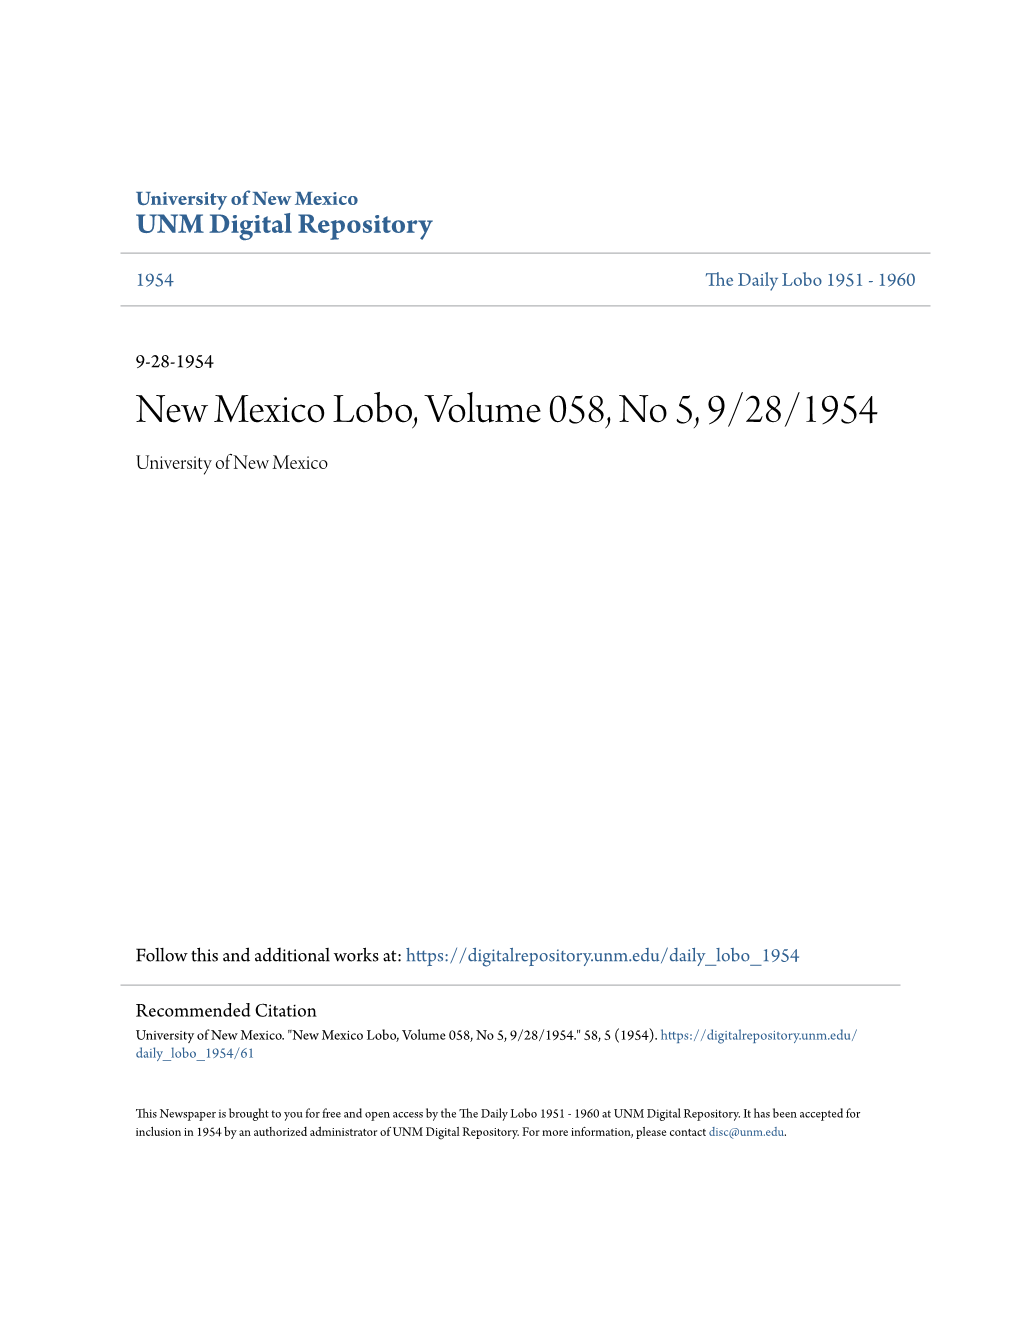 New Mexico Lobo, Volume 058, No 5, 9/28/1954 University of New Mexico